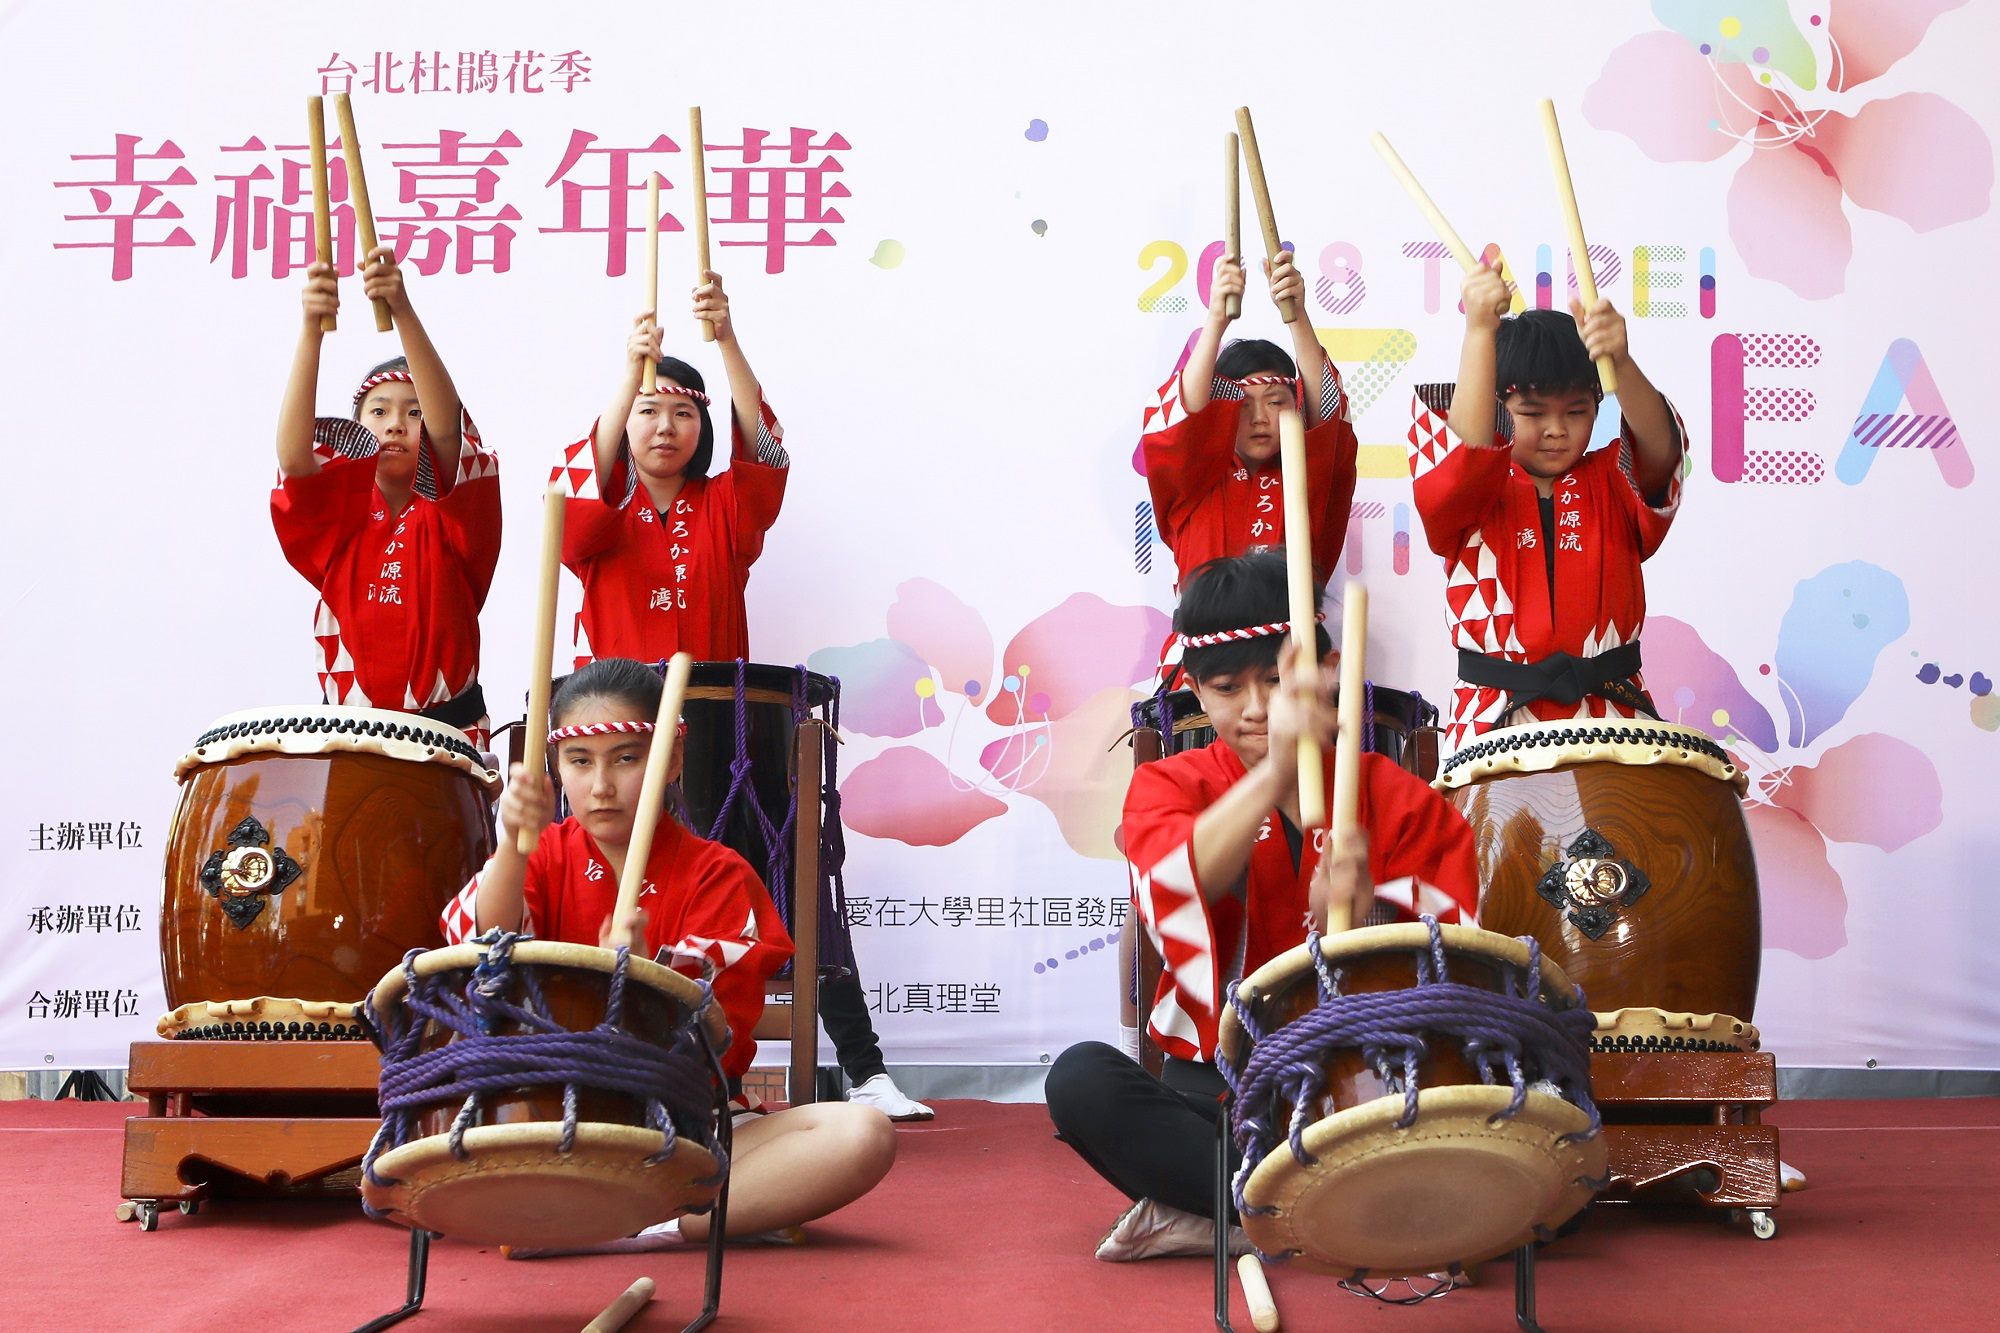 日本表演團體Hiroka源流太鼓隊的精采演出，搏得現場民眾熱烈掌聲。